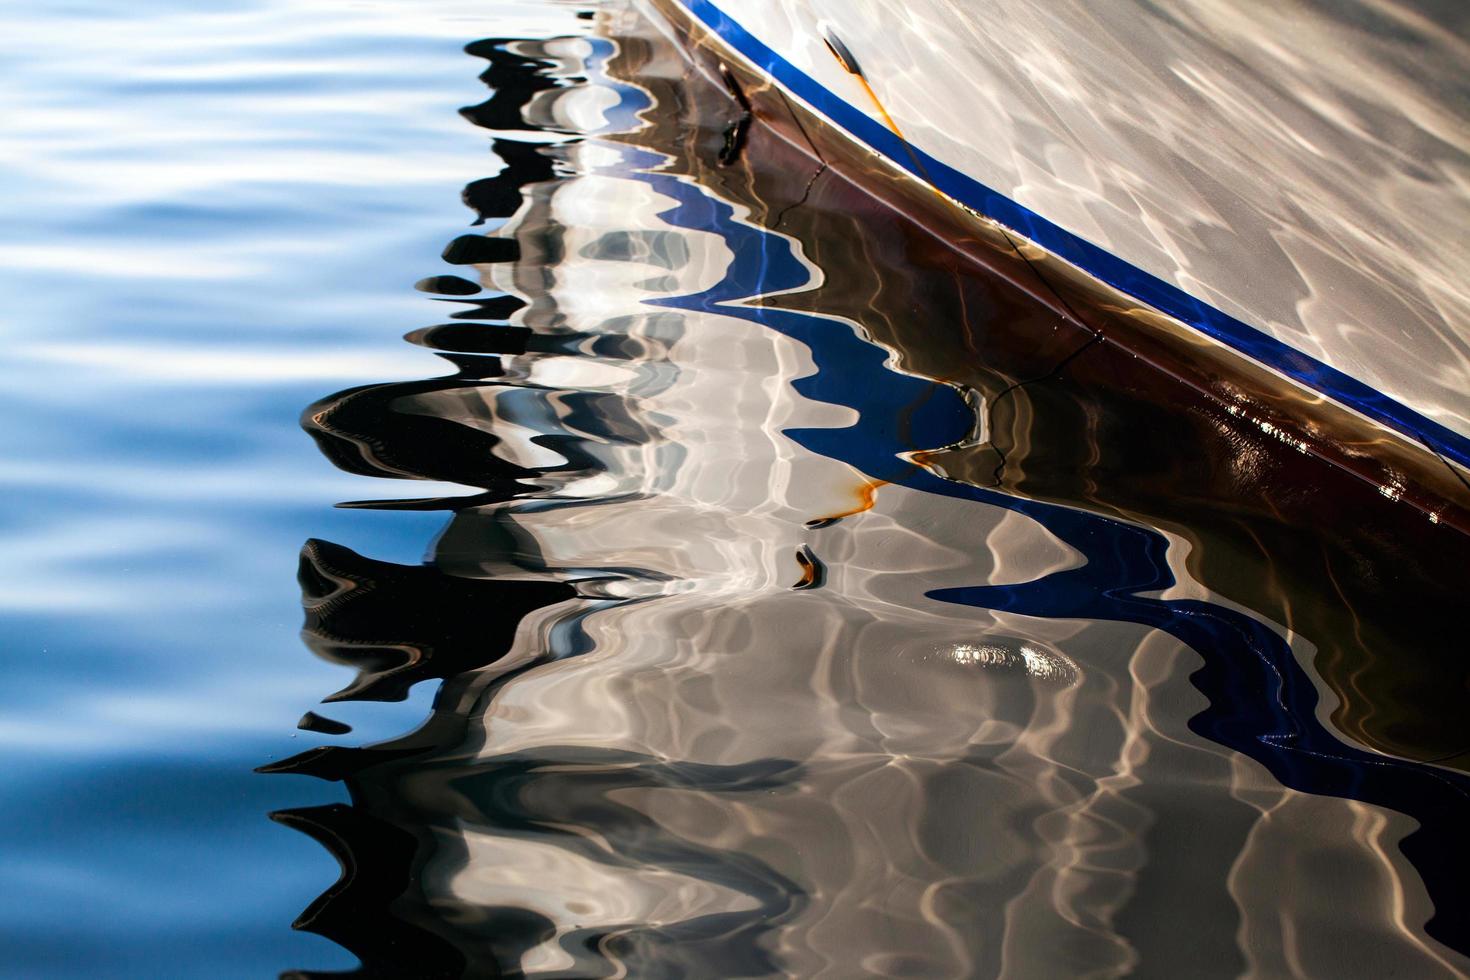 réflexion de bateau sur l'eau de mer photo